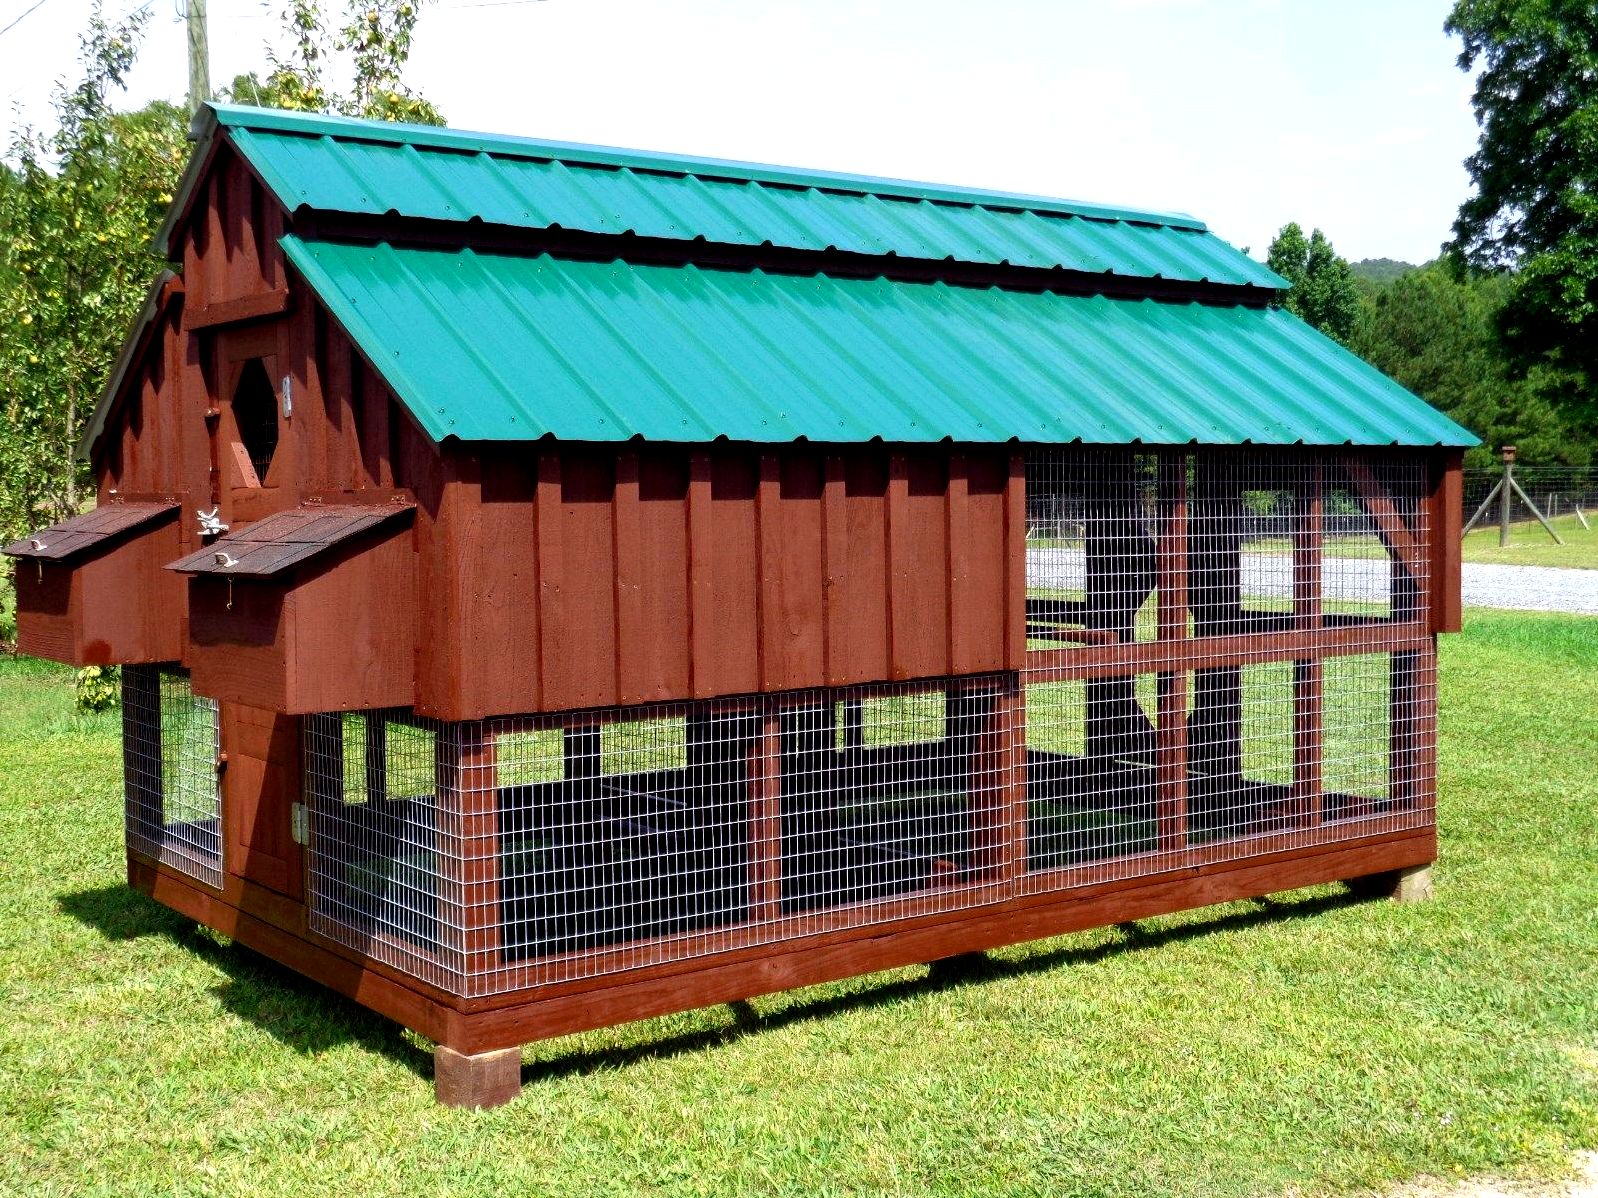 Building an outdoor chicken house Add Amenities